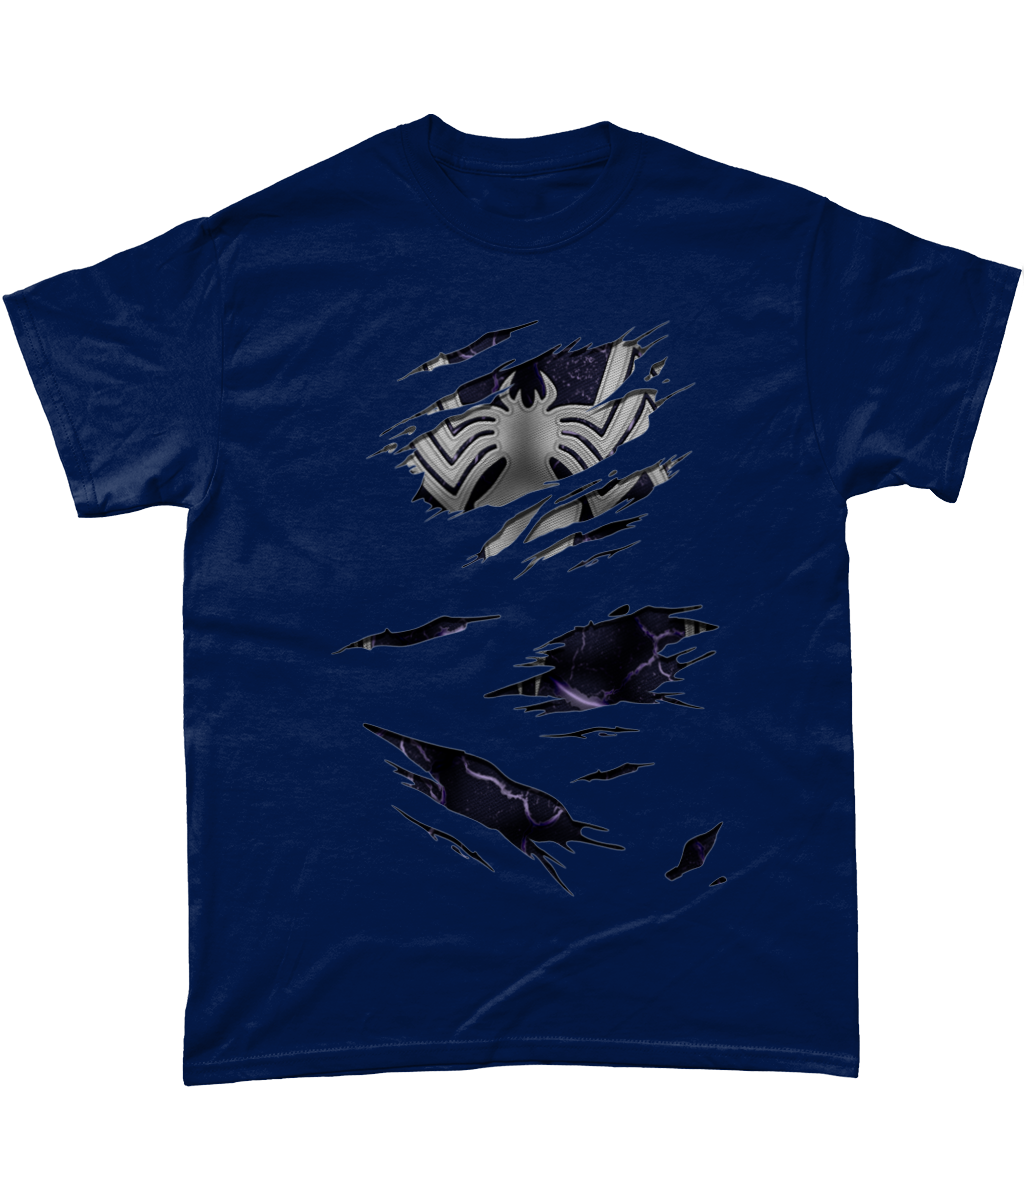 Venom Torn T-Shirt